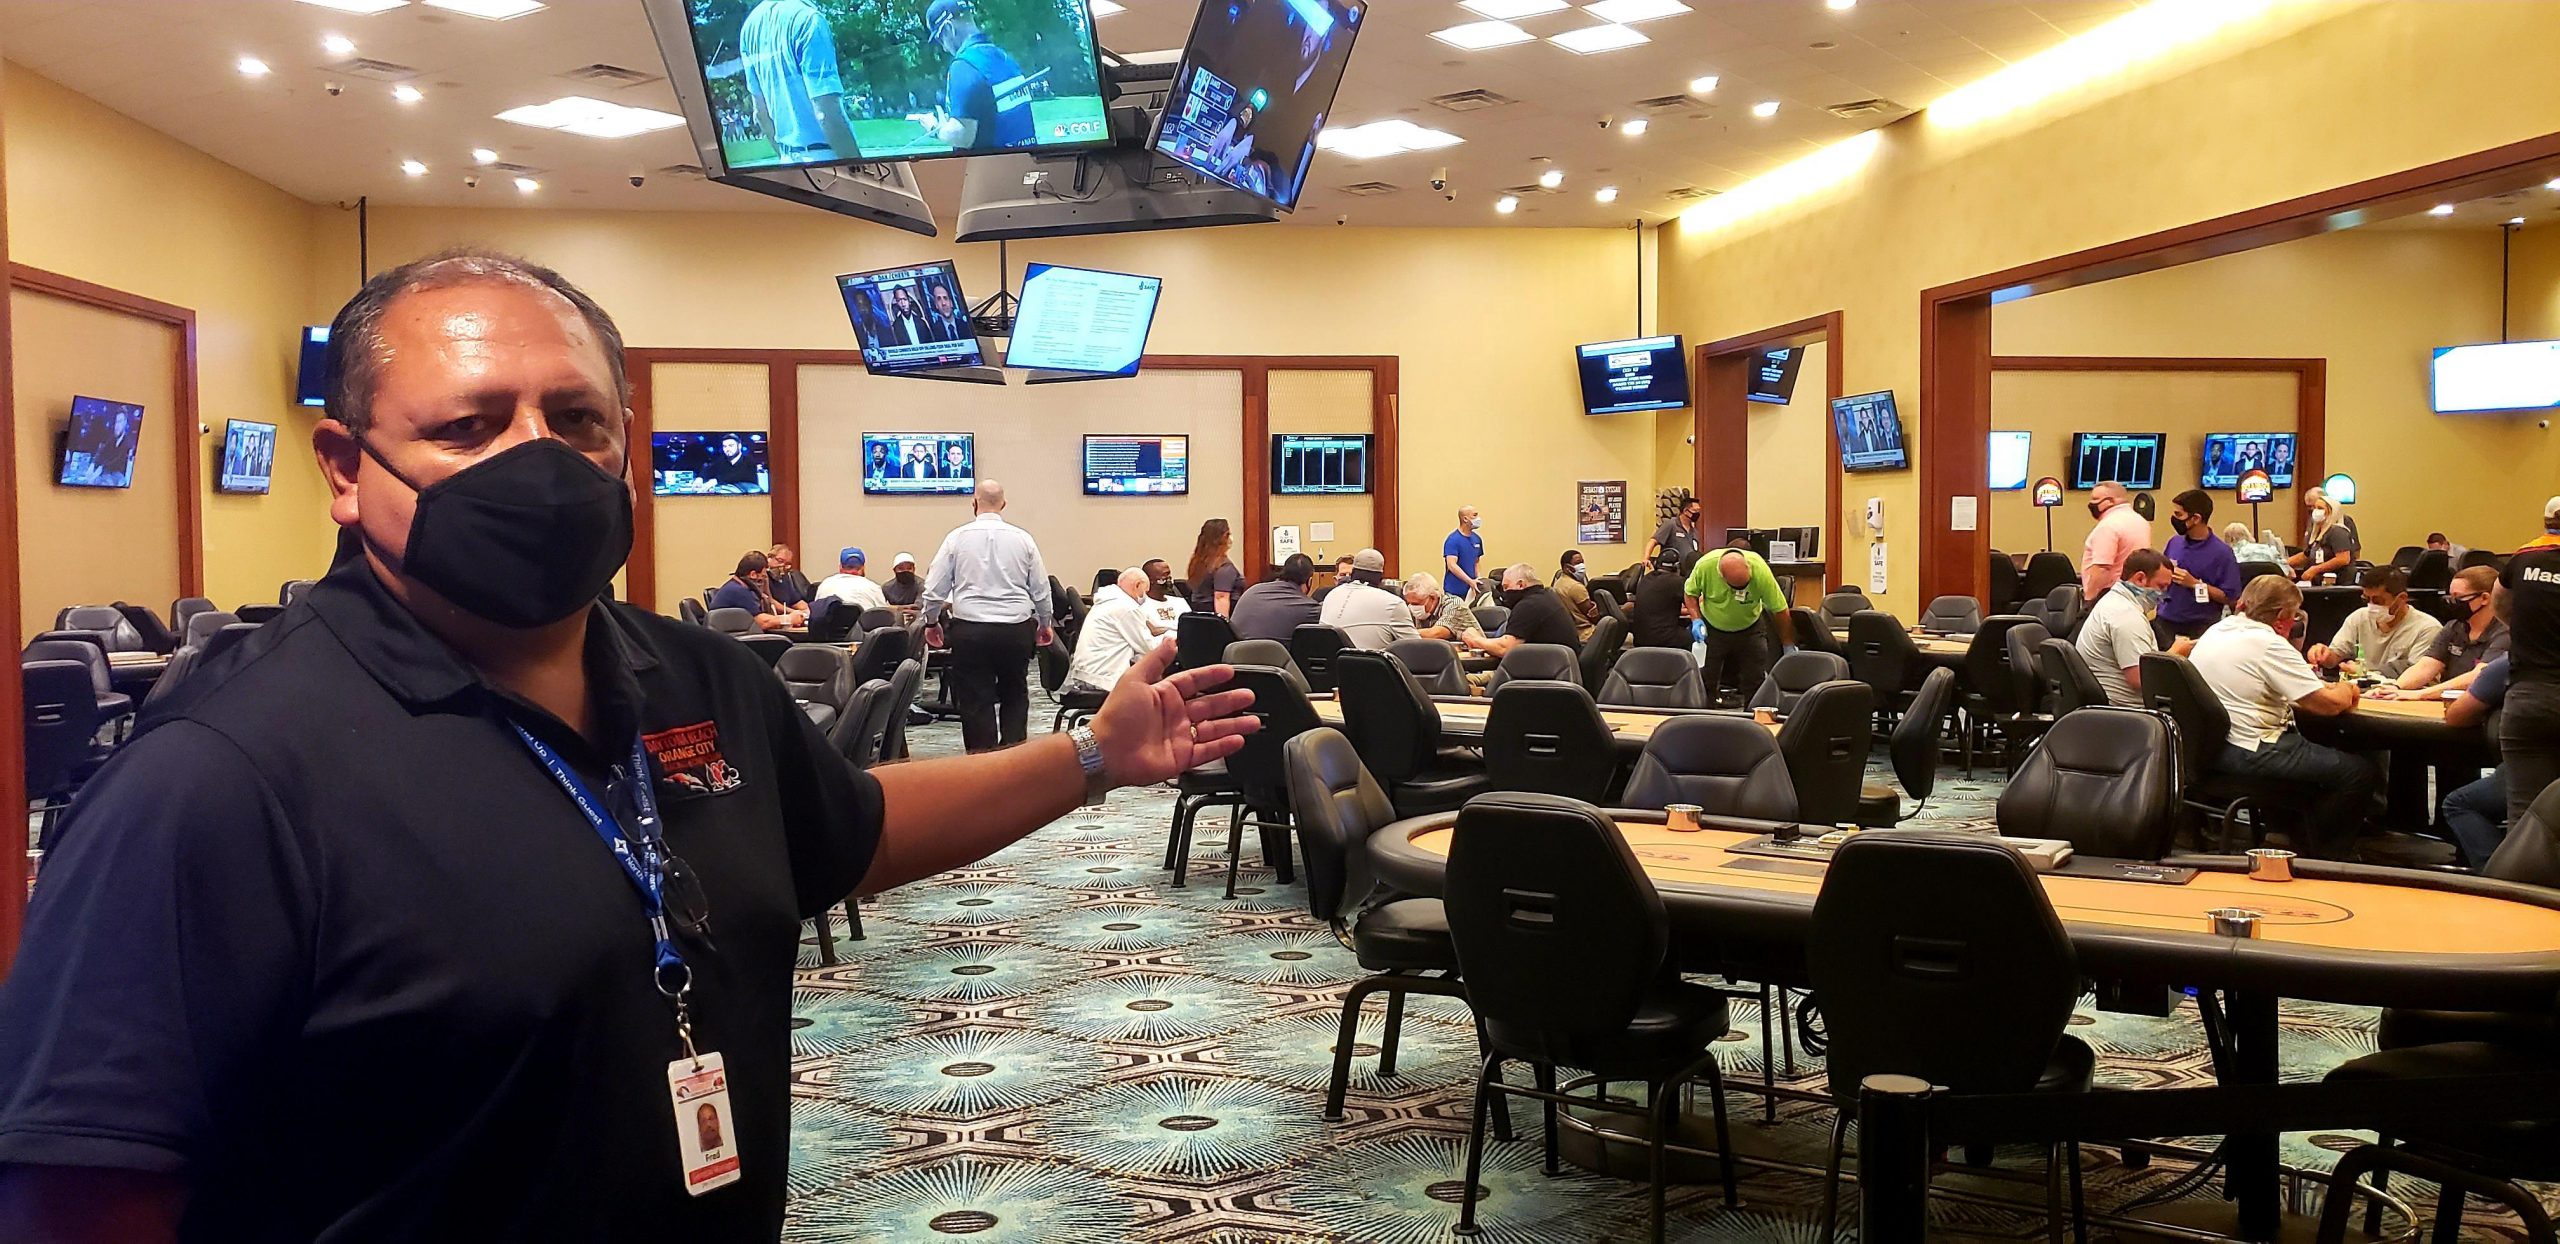 Orange City mengangkat topi di tempat duduk ruang poker - Berita - Daytona Beach News-Journal Online